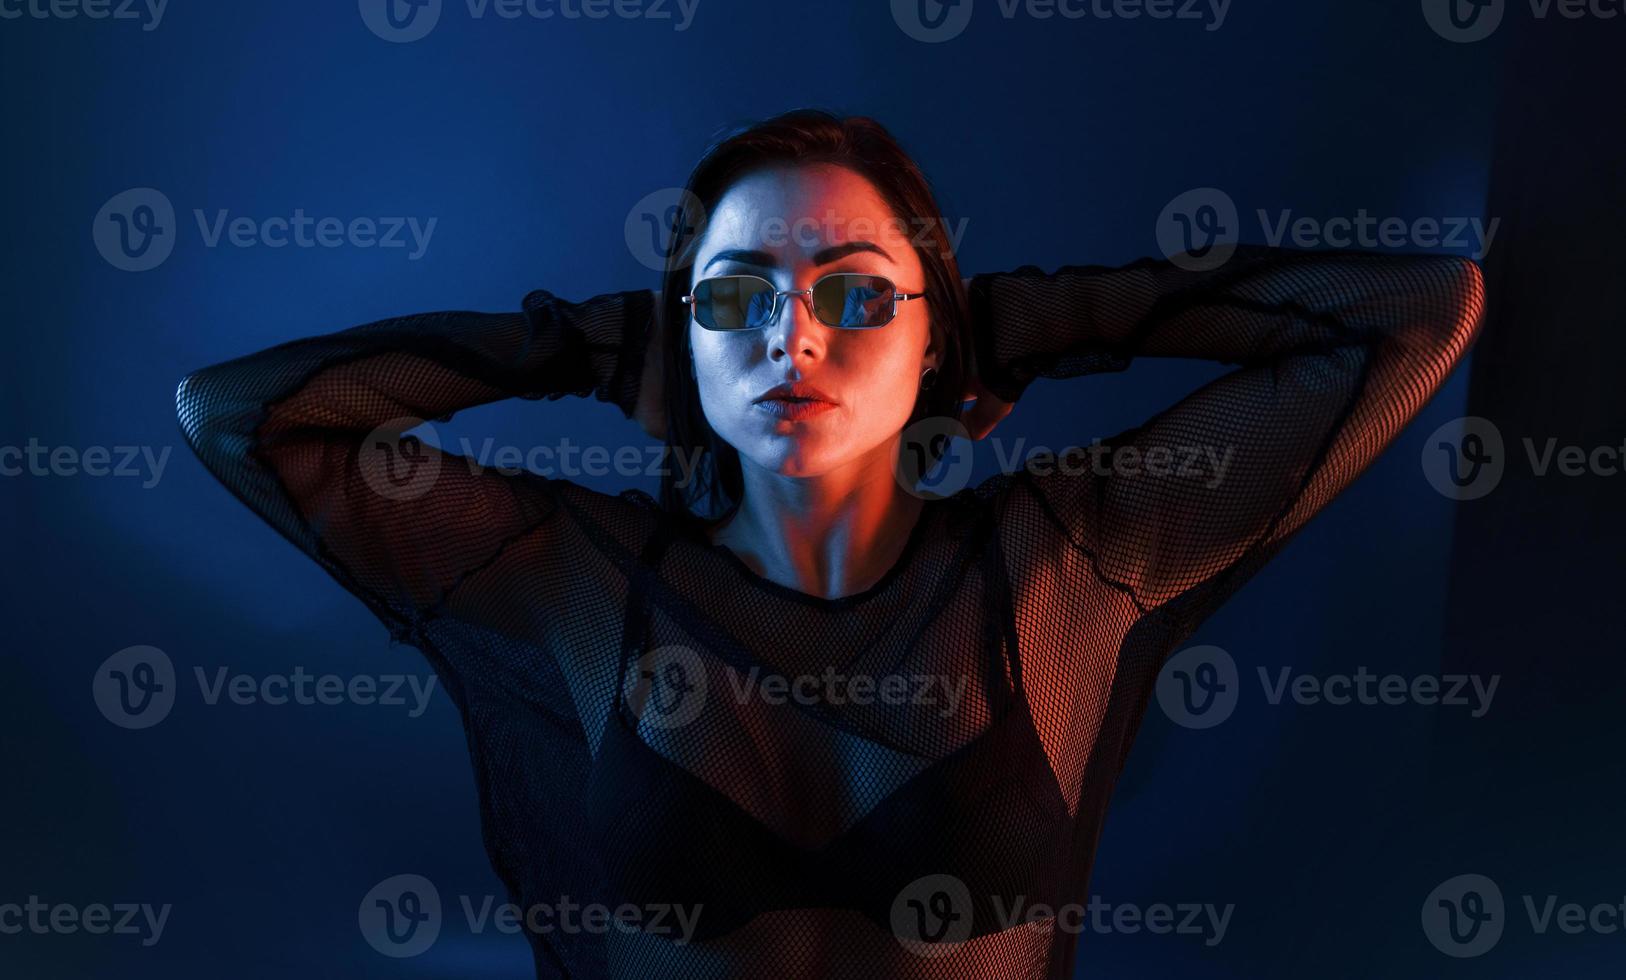 morena gostosa em óculos de sol posando no estúdio com iluminação neon foto